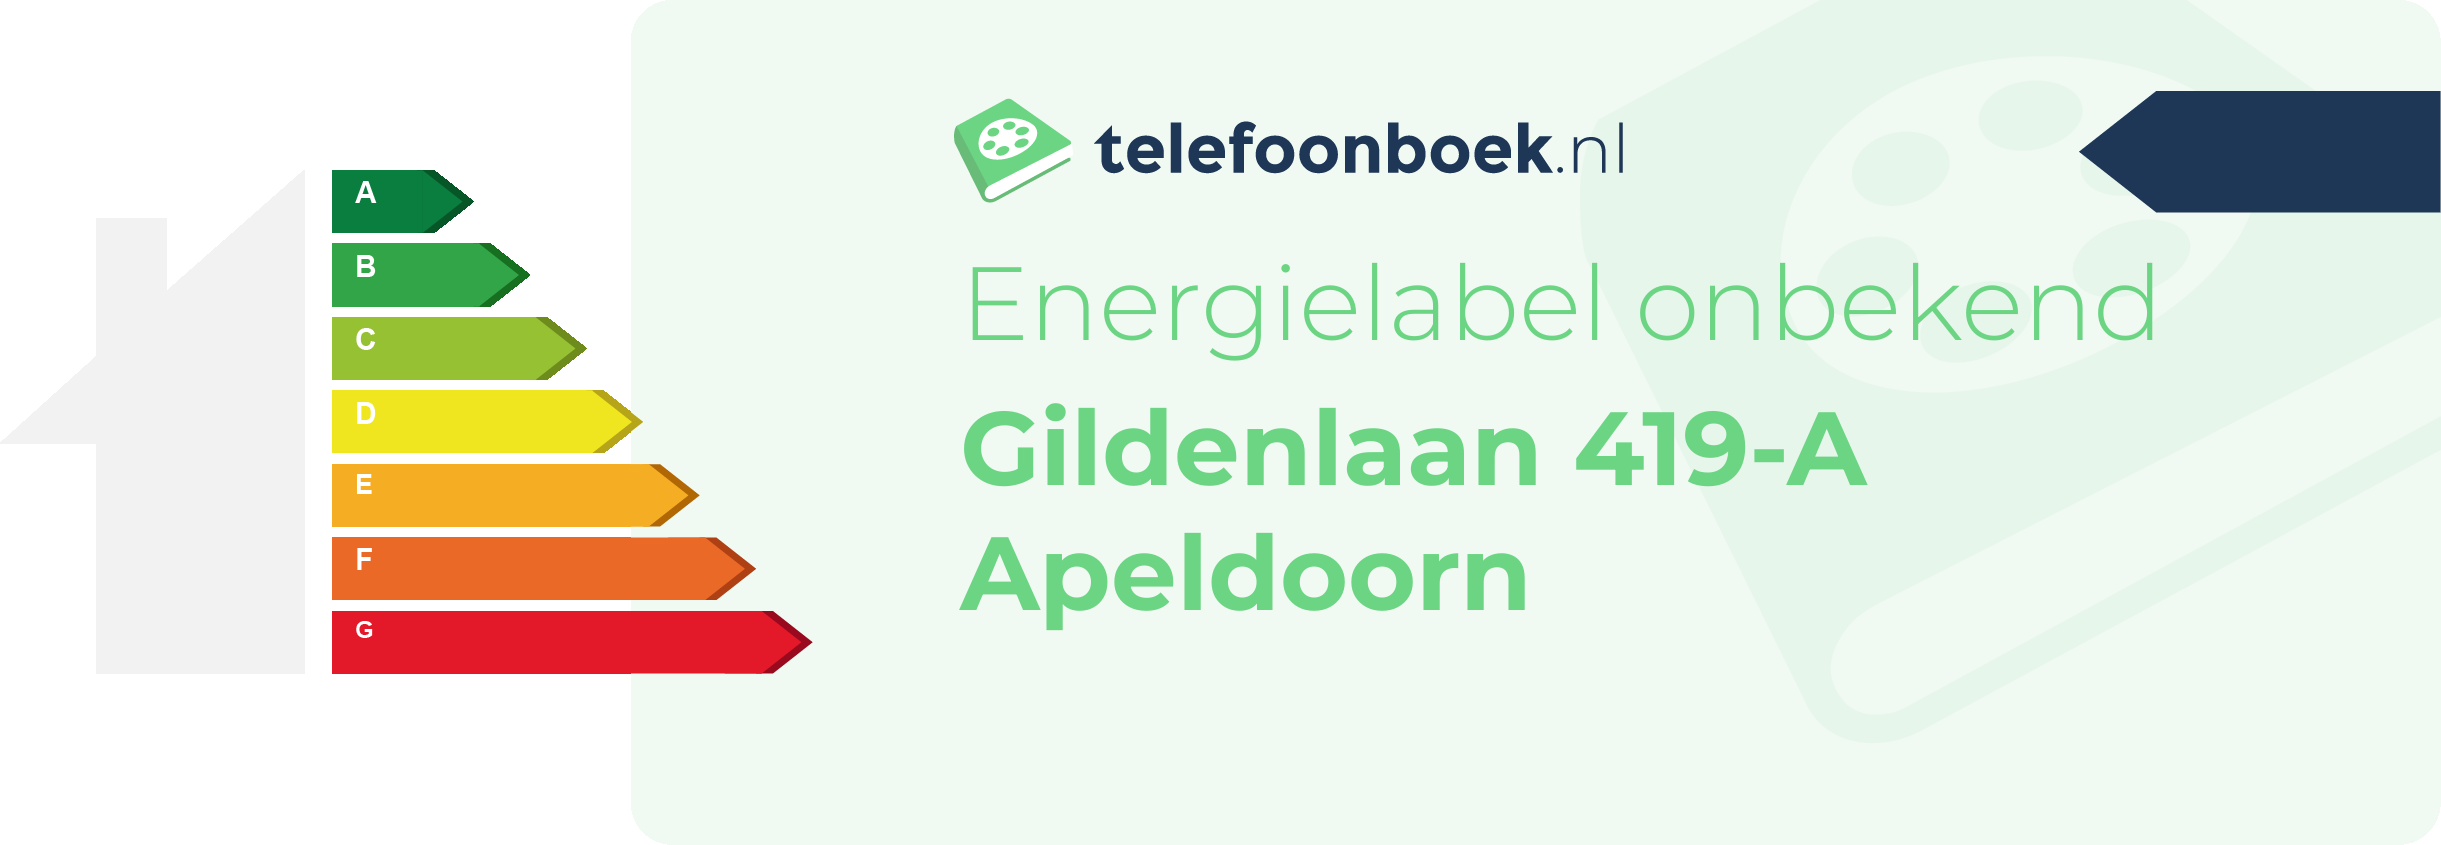 Energielabel Gildenlaan 419-A Apeldoorn